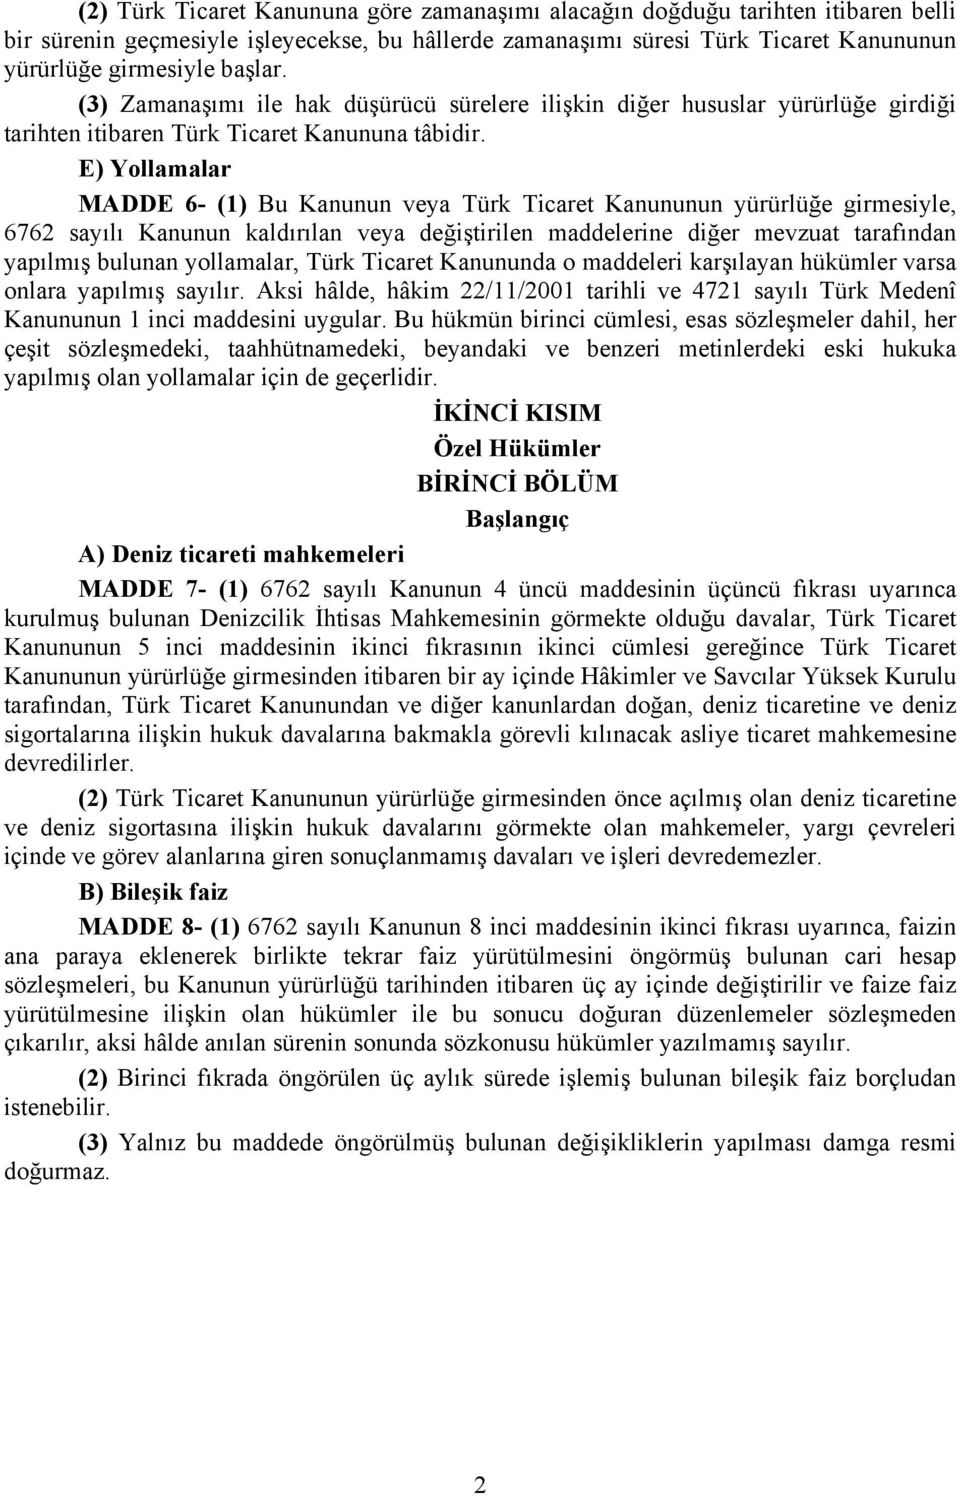 E) Yollamalar MADDE 6- (1) Bu Kanunun veya Türk Ticaret Kanununun yürürlüğe girmesiyle, 6762 sayılı Kanunun kaldırılan veya değiştirilen maddelerine diğer mevzuat tarafından yapılmış bulunan